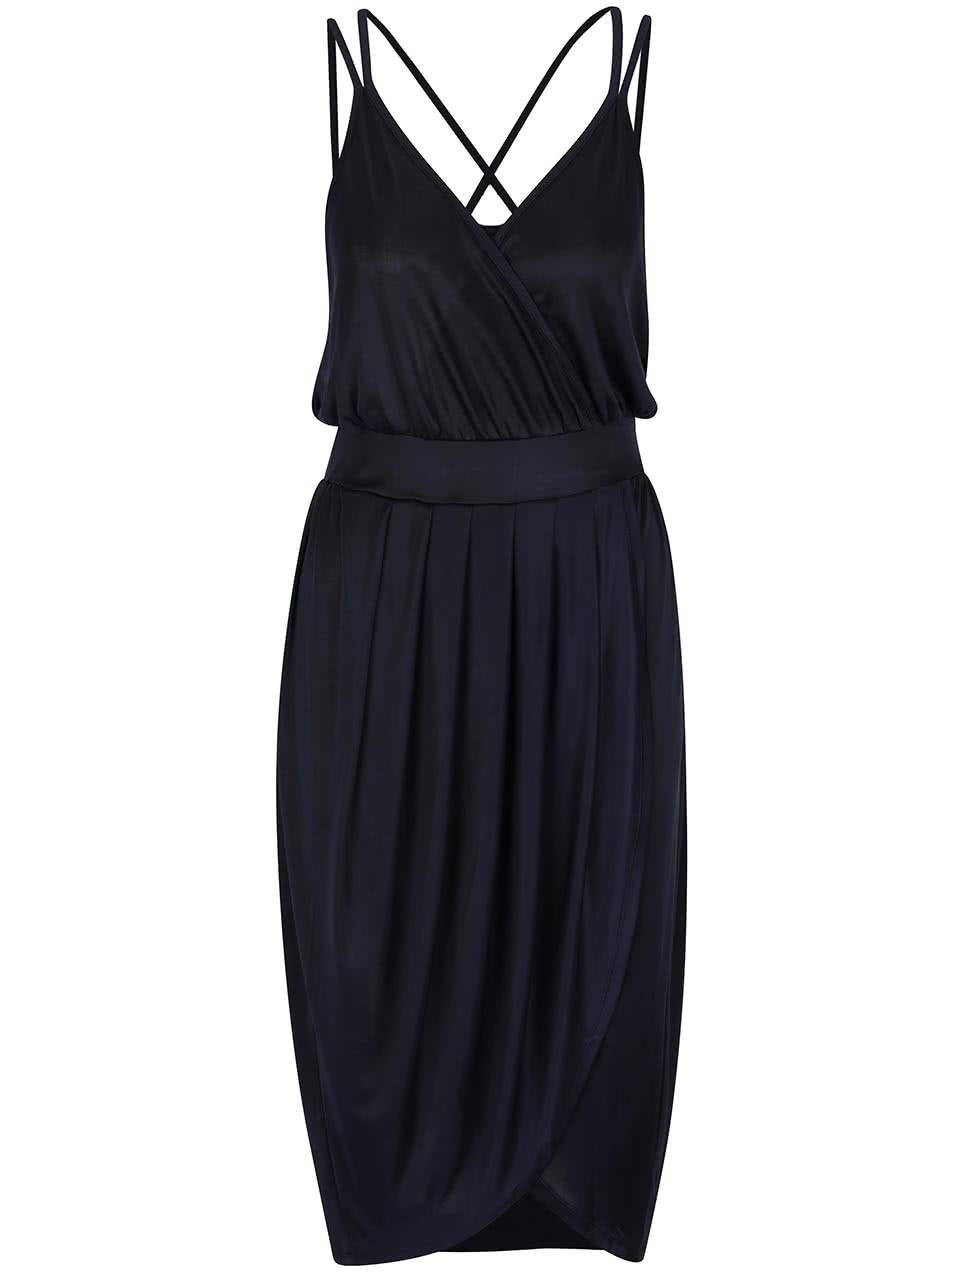 Tmavě modré šaty s překládanou sukní Vero Moda Mya